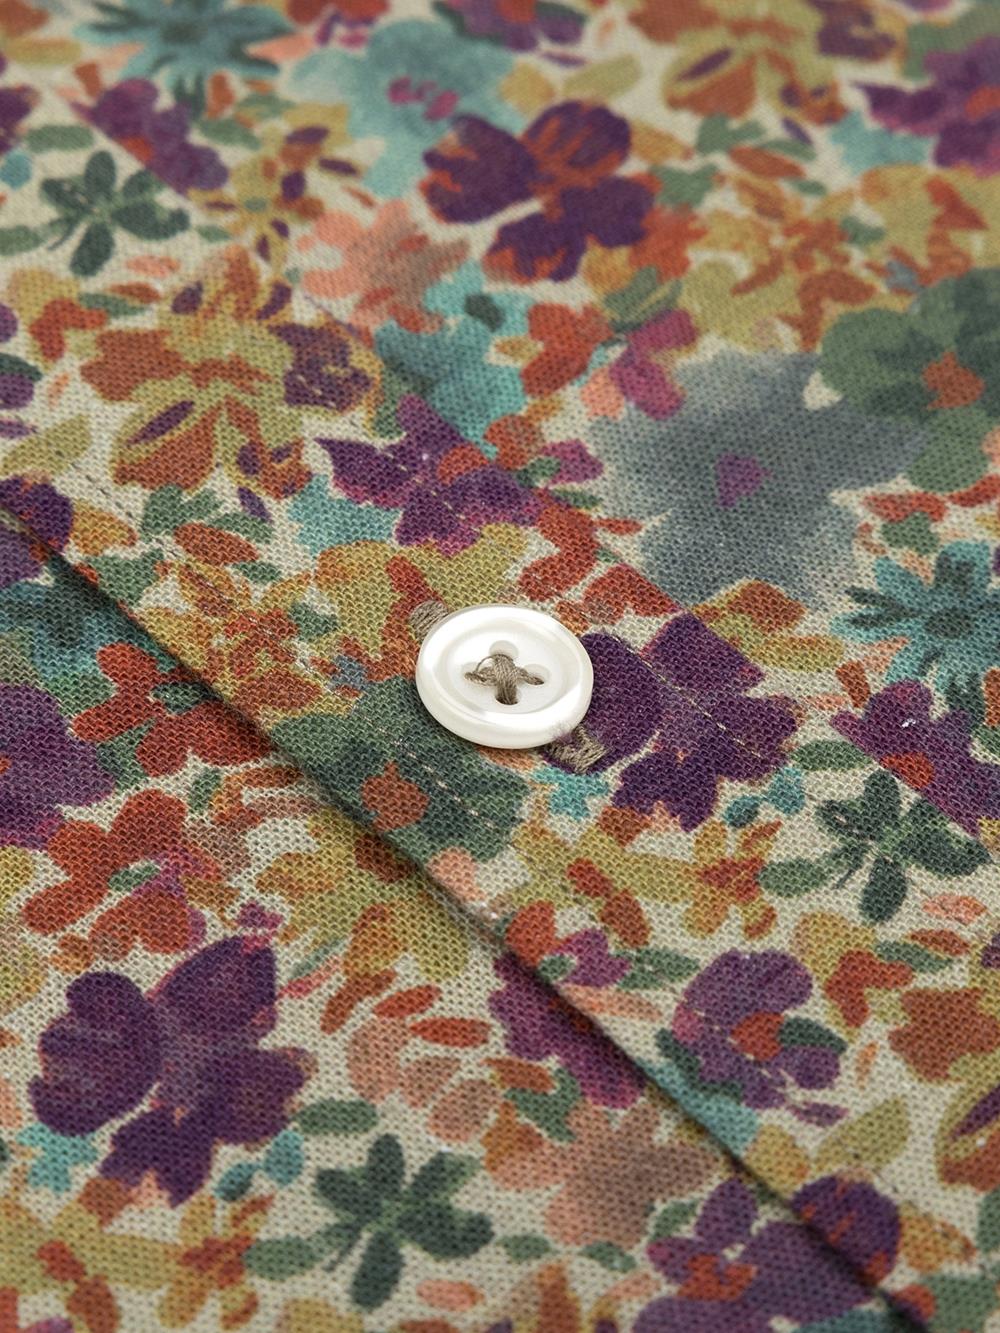 Camisa Stuart de lino con estampado floral 